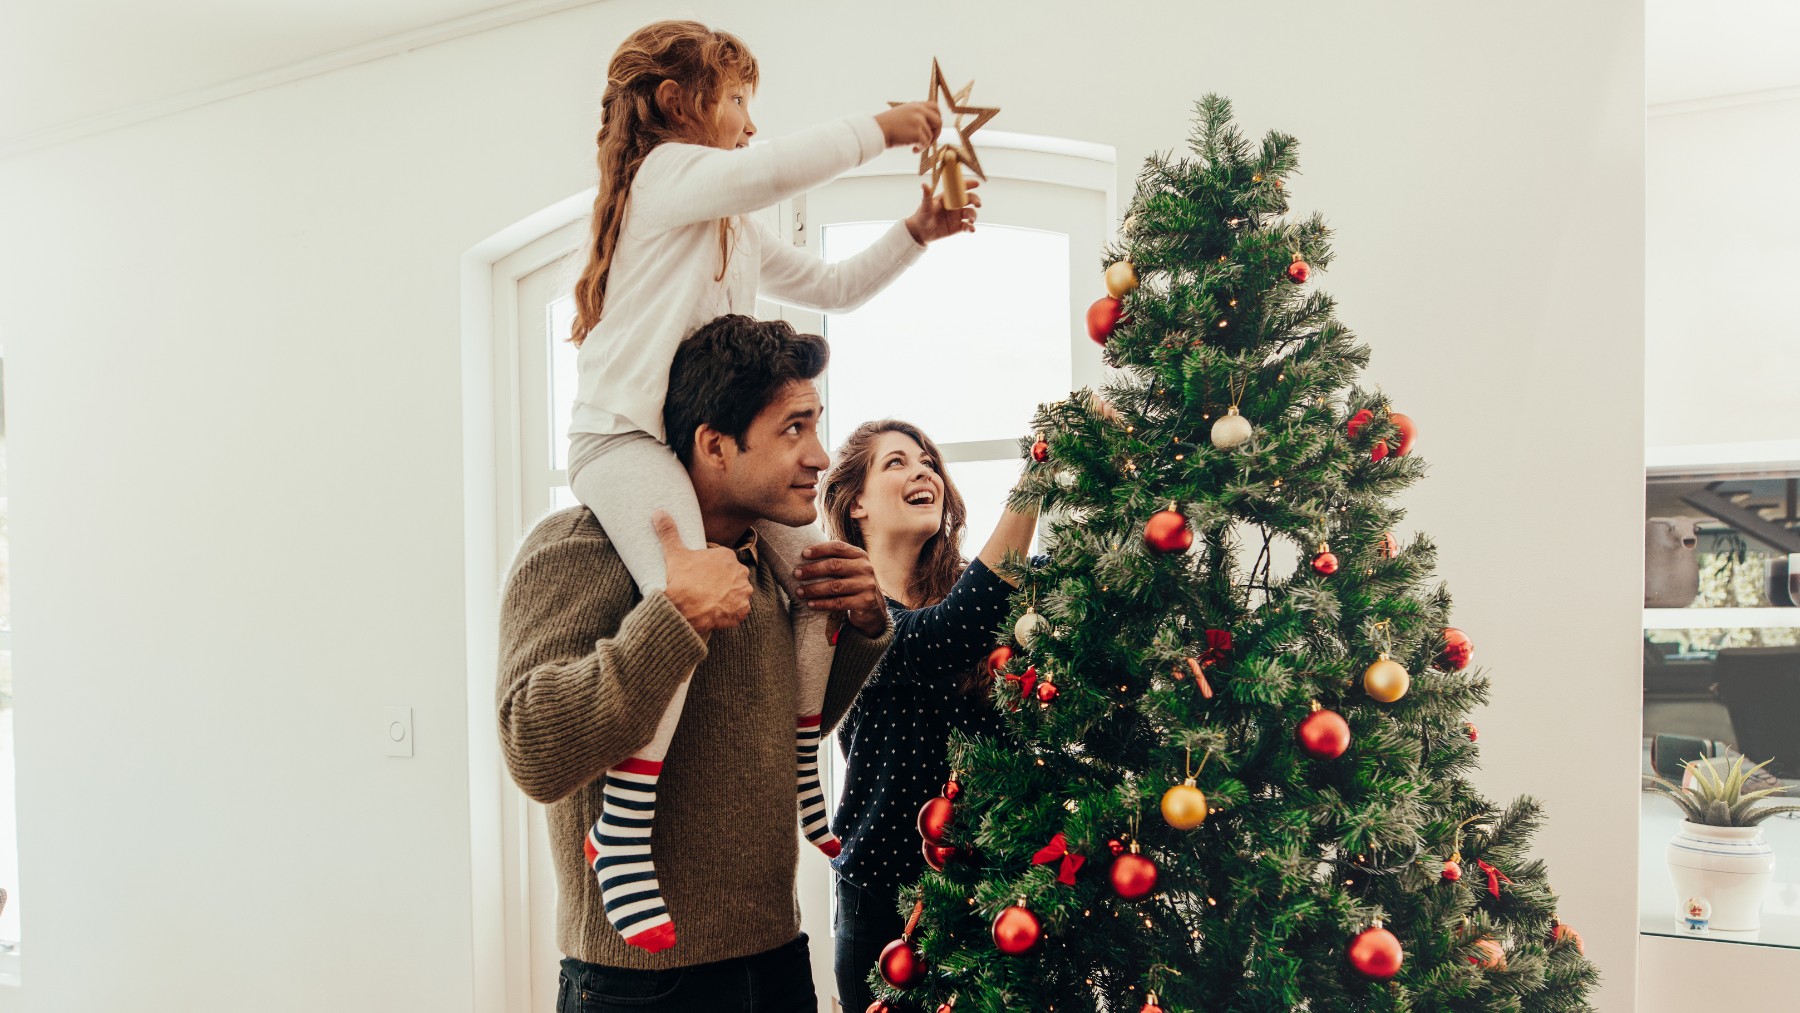 Cada año millones de árboles de Navidad aparecen de nuevo en las casas. La elección de si debe de ser plástico o natural es muy sencilla si atendemos a criterios de sostenibilidad